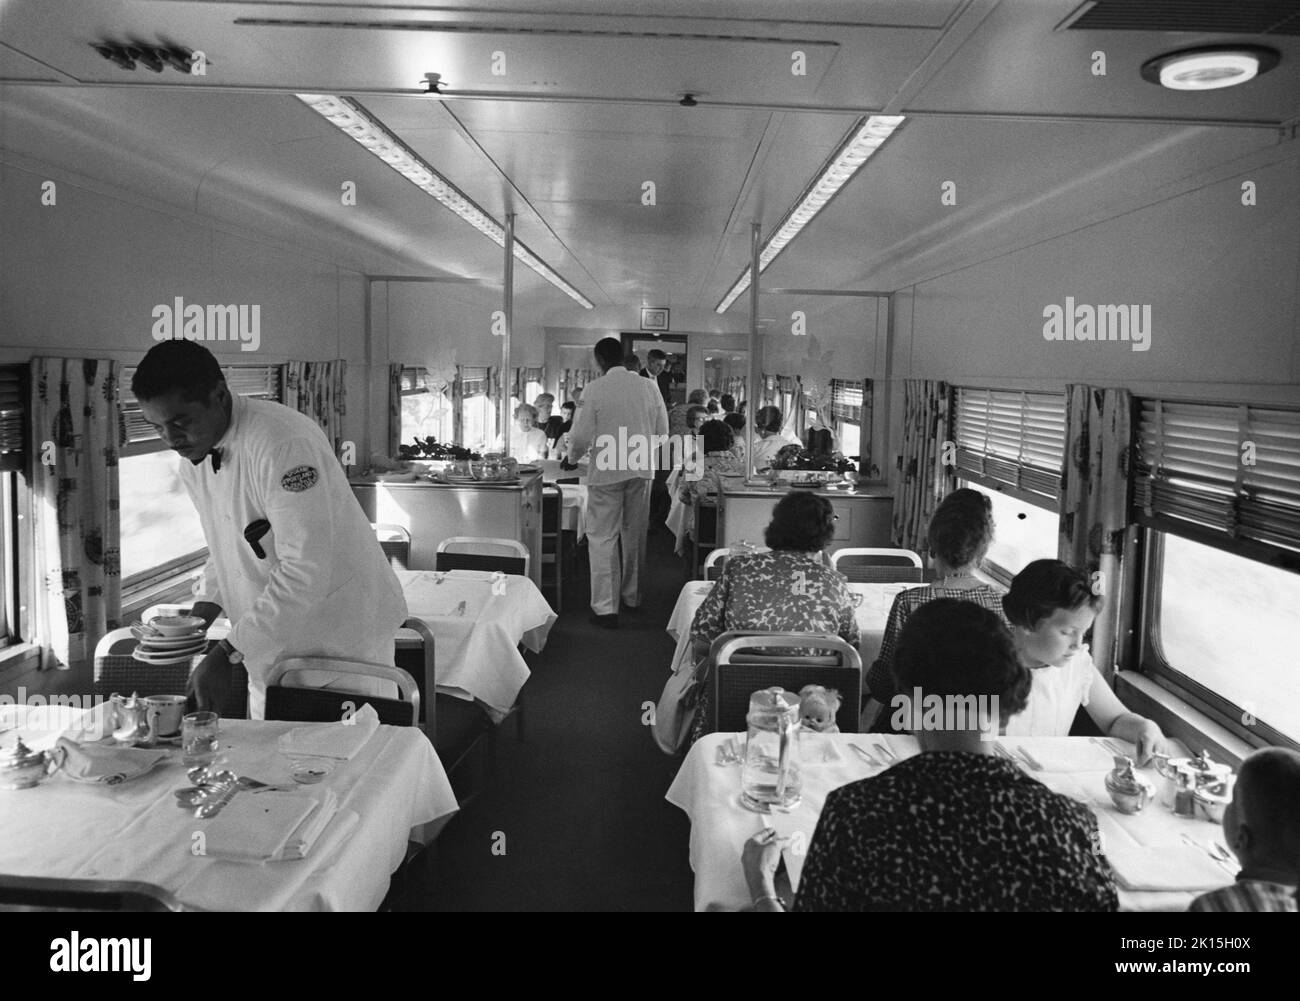 Un coche-restaurante a bordo de un tren, alrededor de 1960. Foto de stock